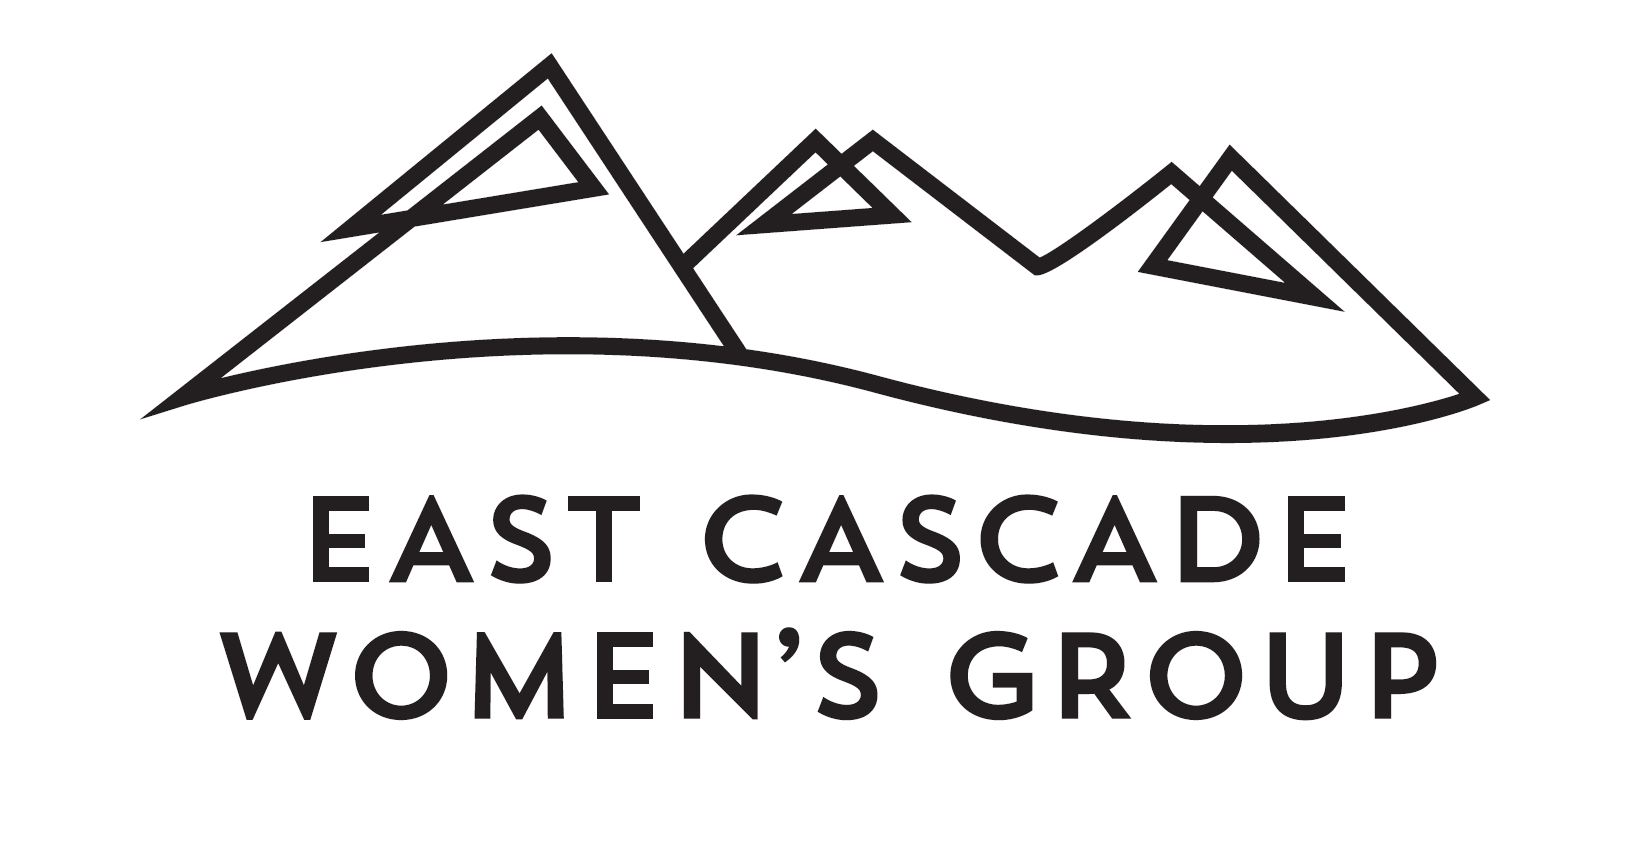 East Cascade Women's Group logo